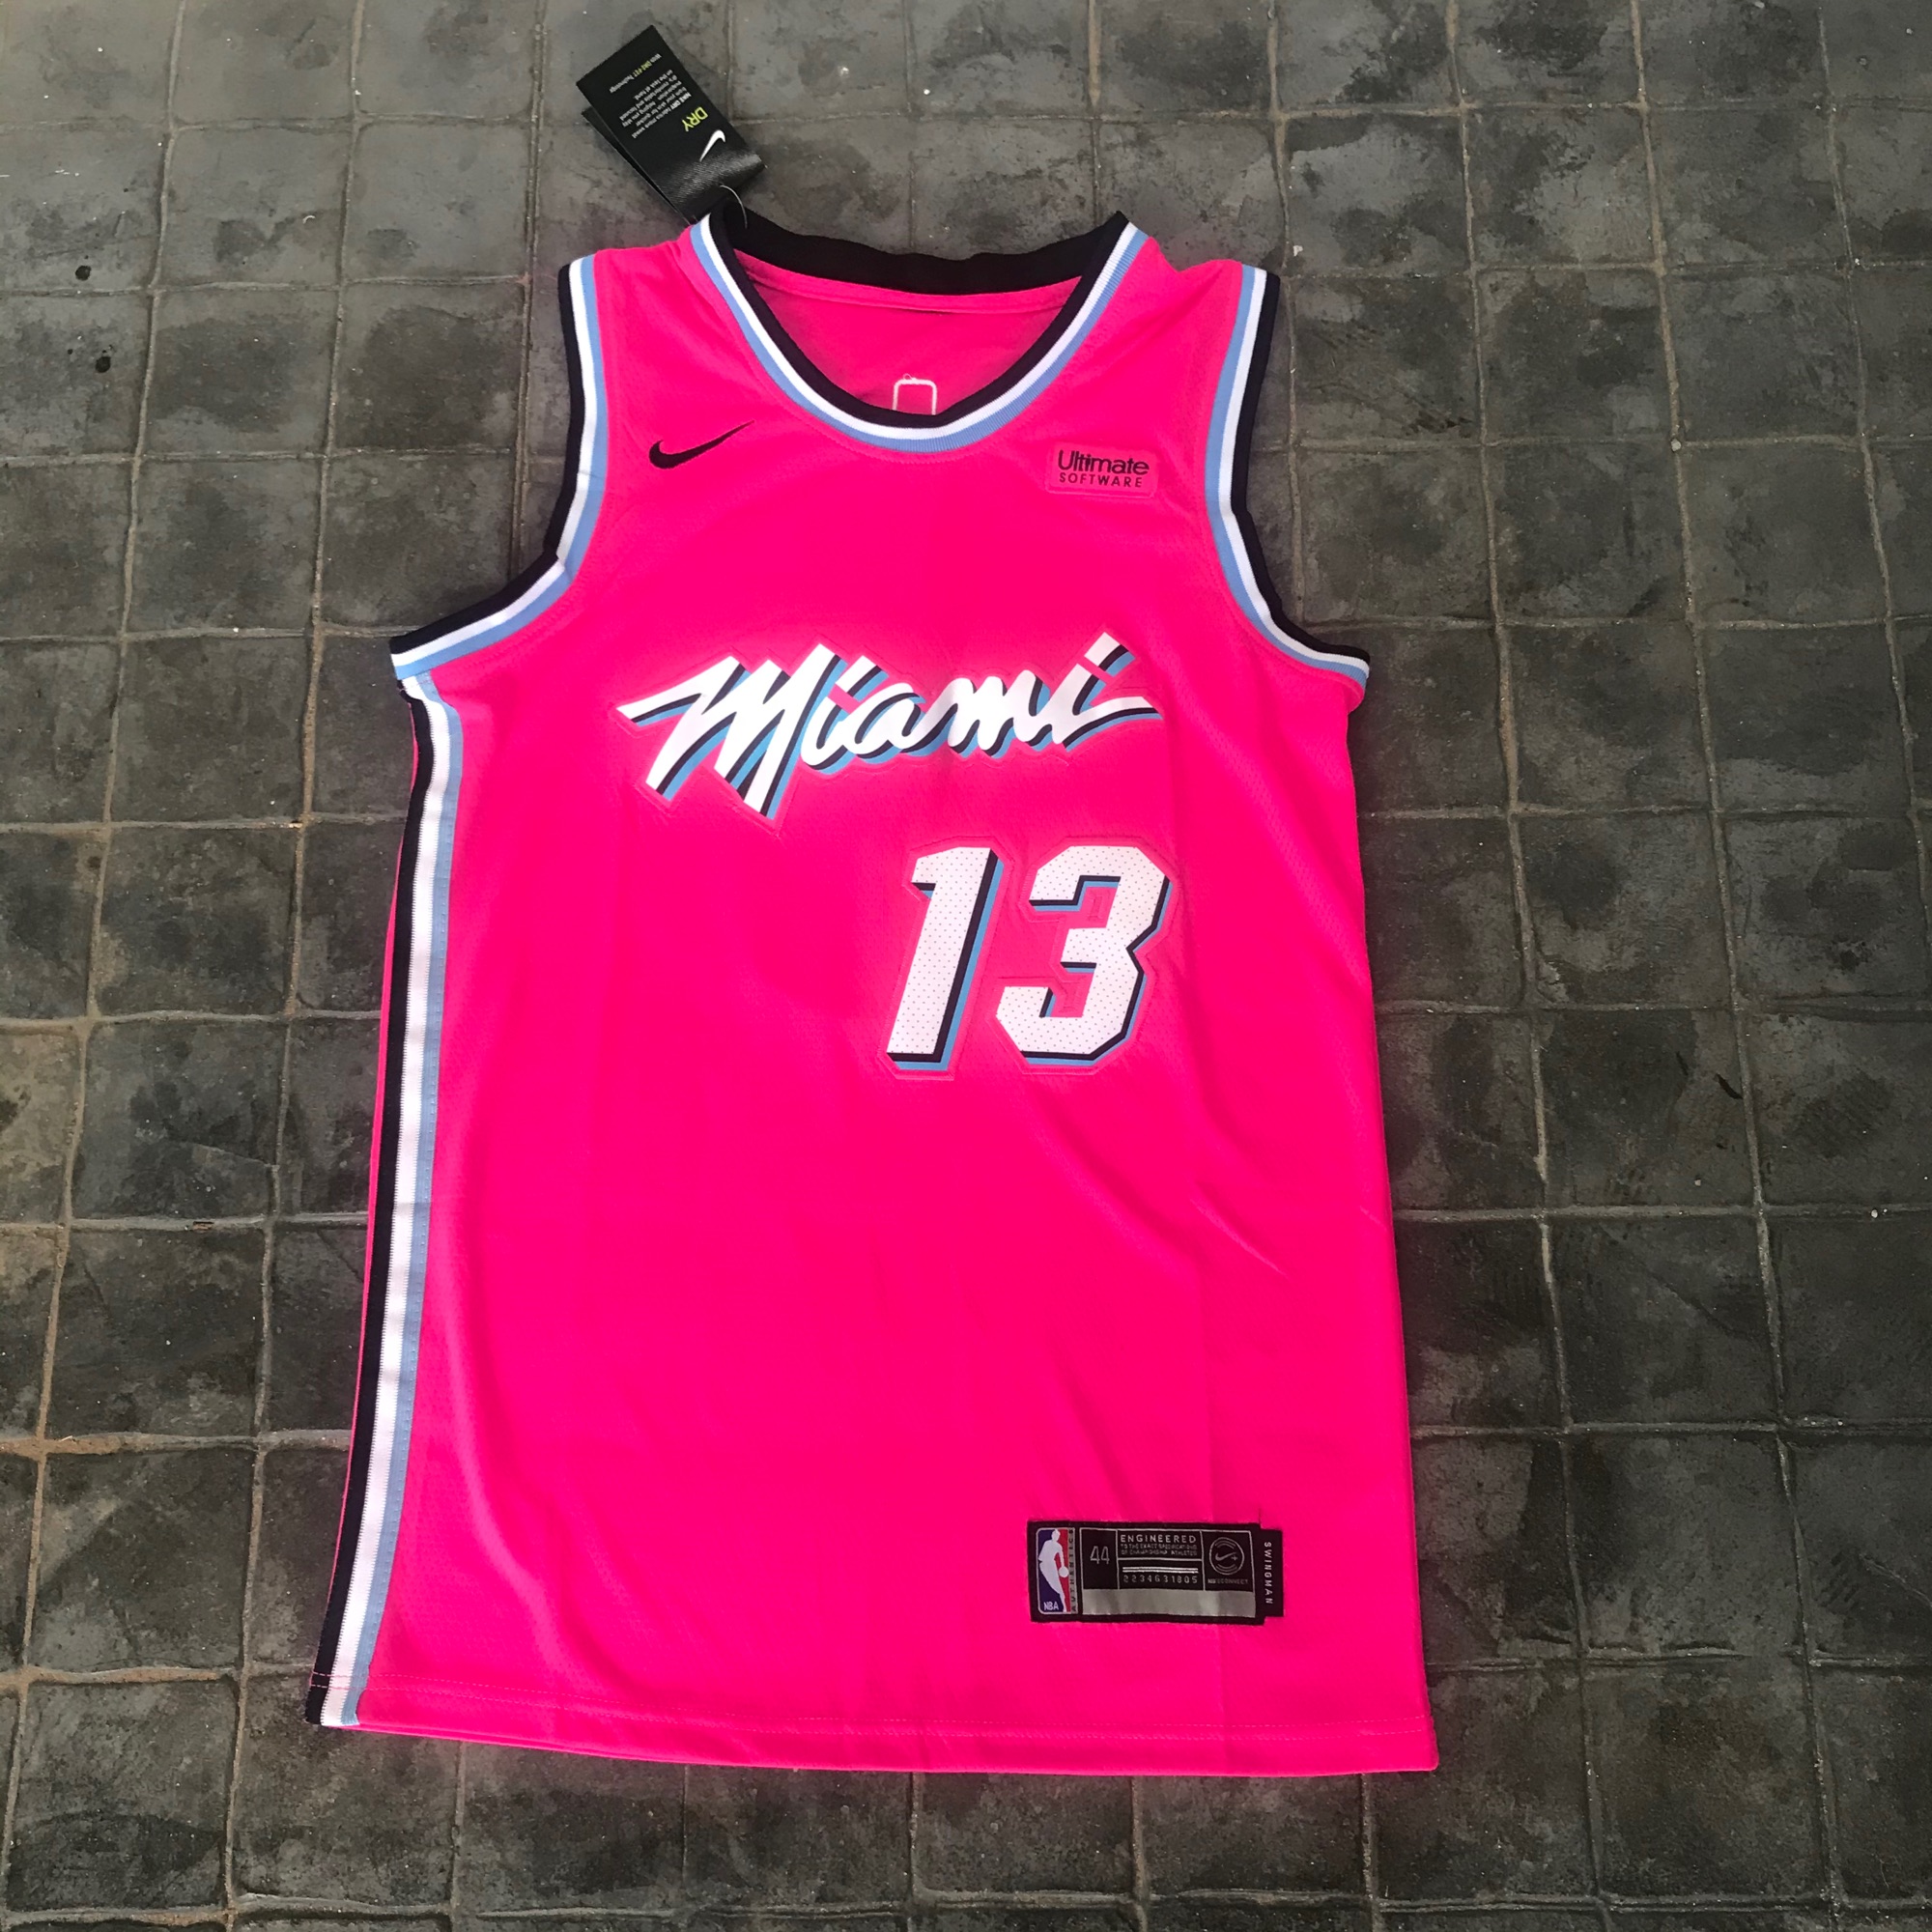 เสื้อบาสเกตบอลbasketball.jerseys(พร้อมจัดส่ง)#Heat.Miami.13.ADEBAYO.(pink)